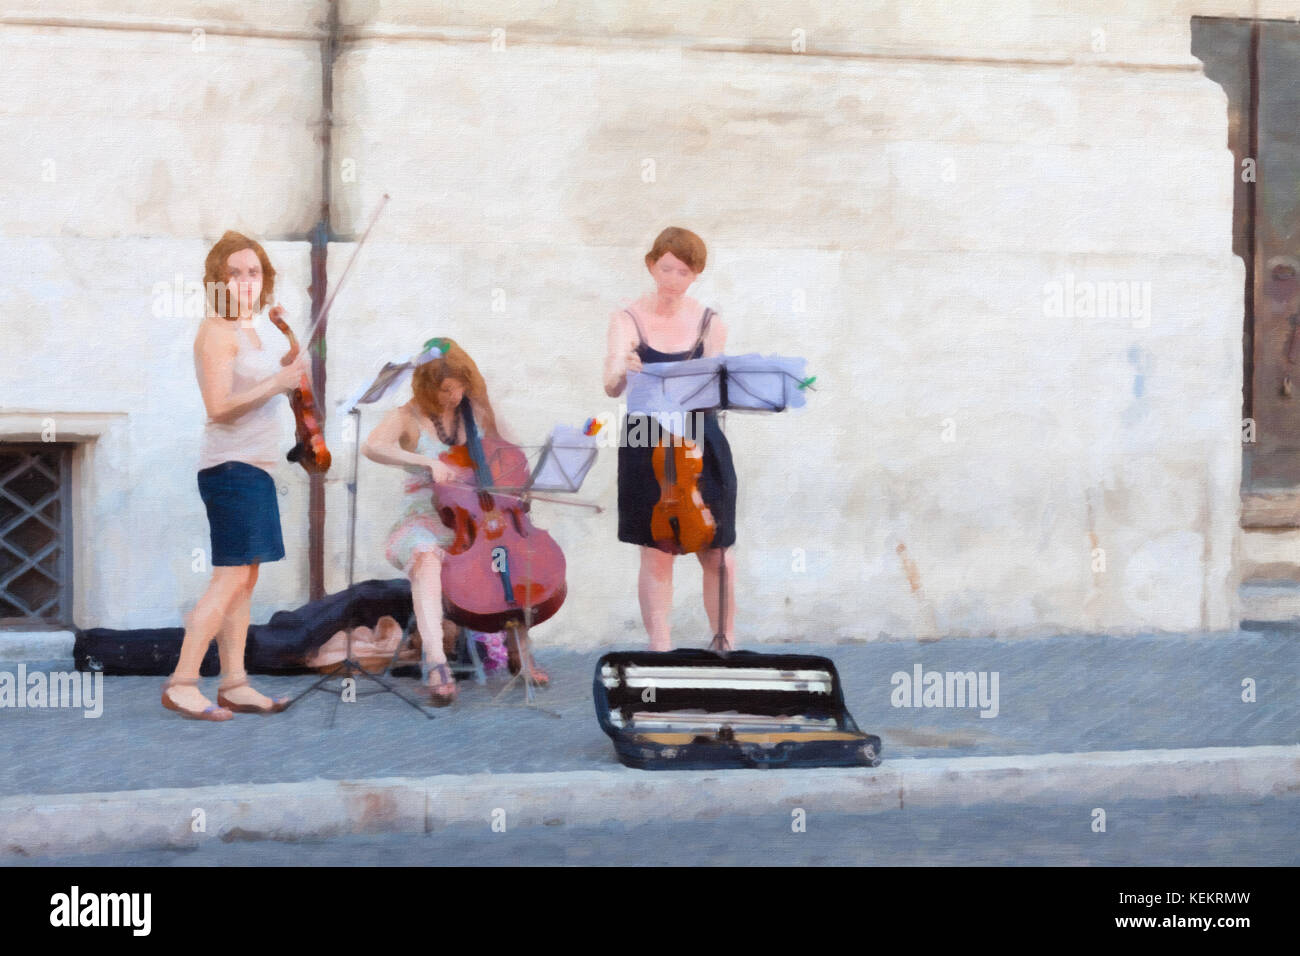 Image style de peinture à l'huile de trois filles jouant dans la rue Banque D'Images